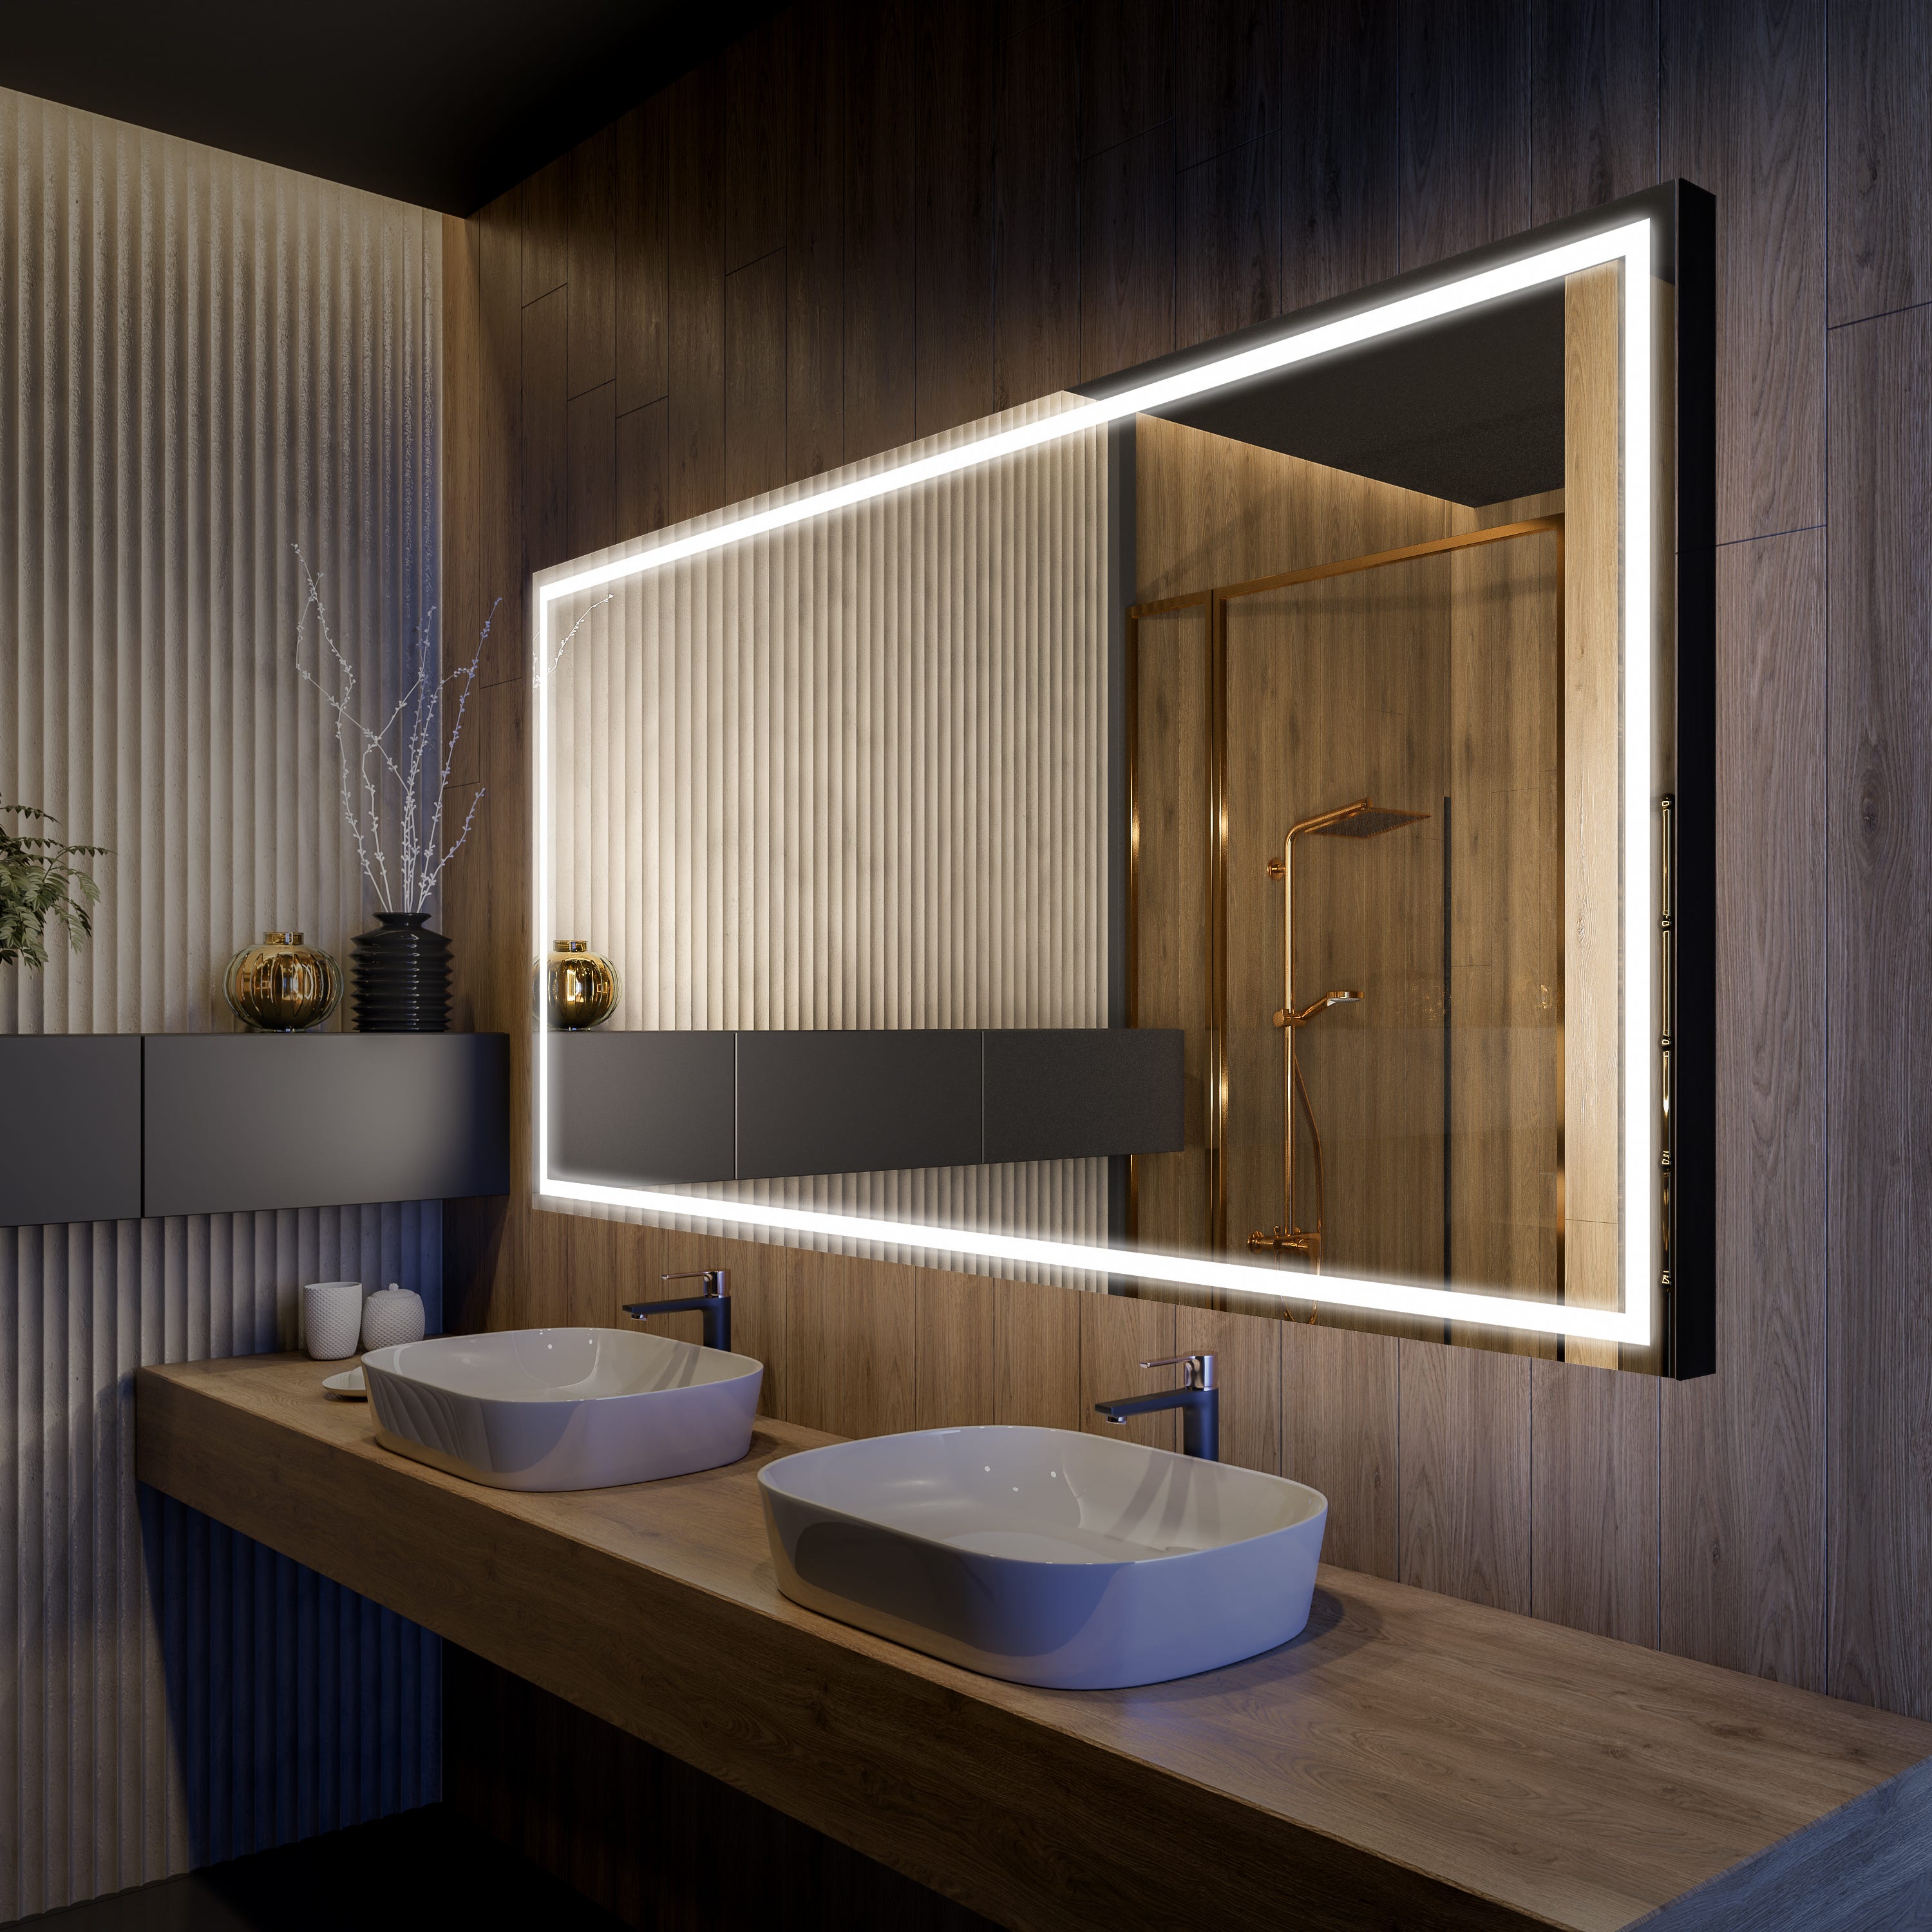 Miroir lumineux contemporain, salle de bain, vertical 50x80x4.2cm avec  éclairage périmétral à led comp castore